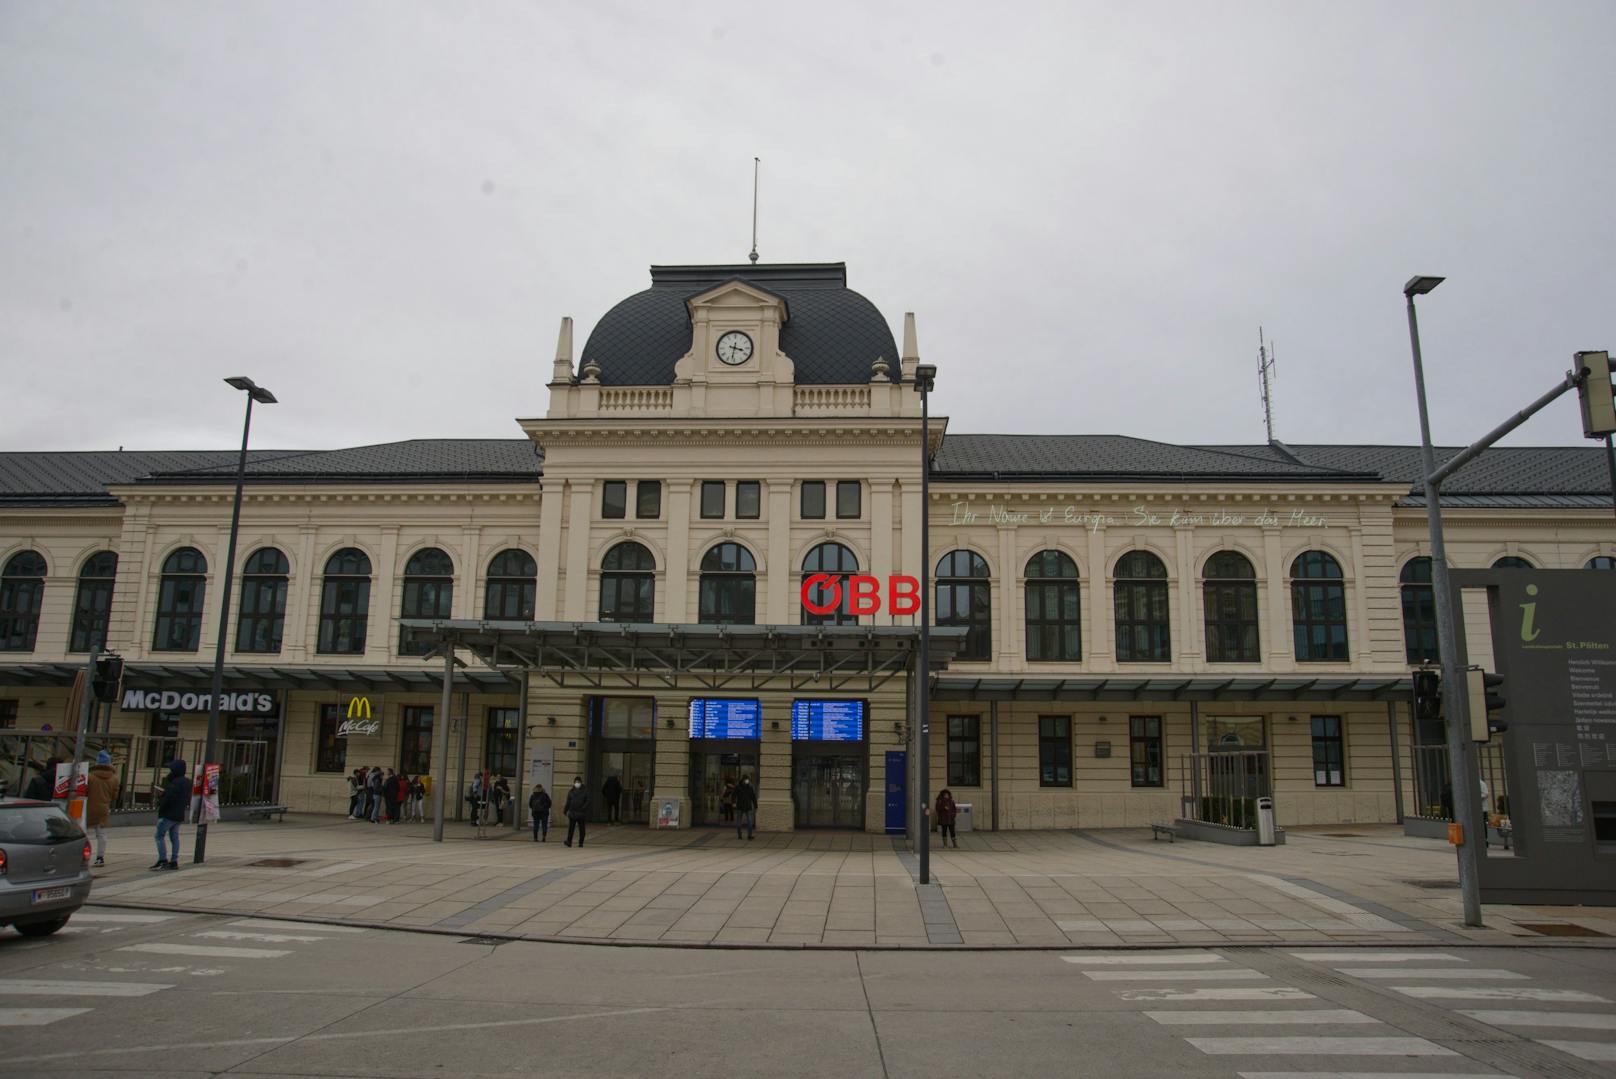 Bahnhof St Pölten - nichts wurde es mit der Reise